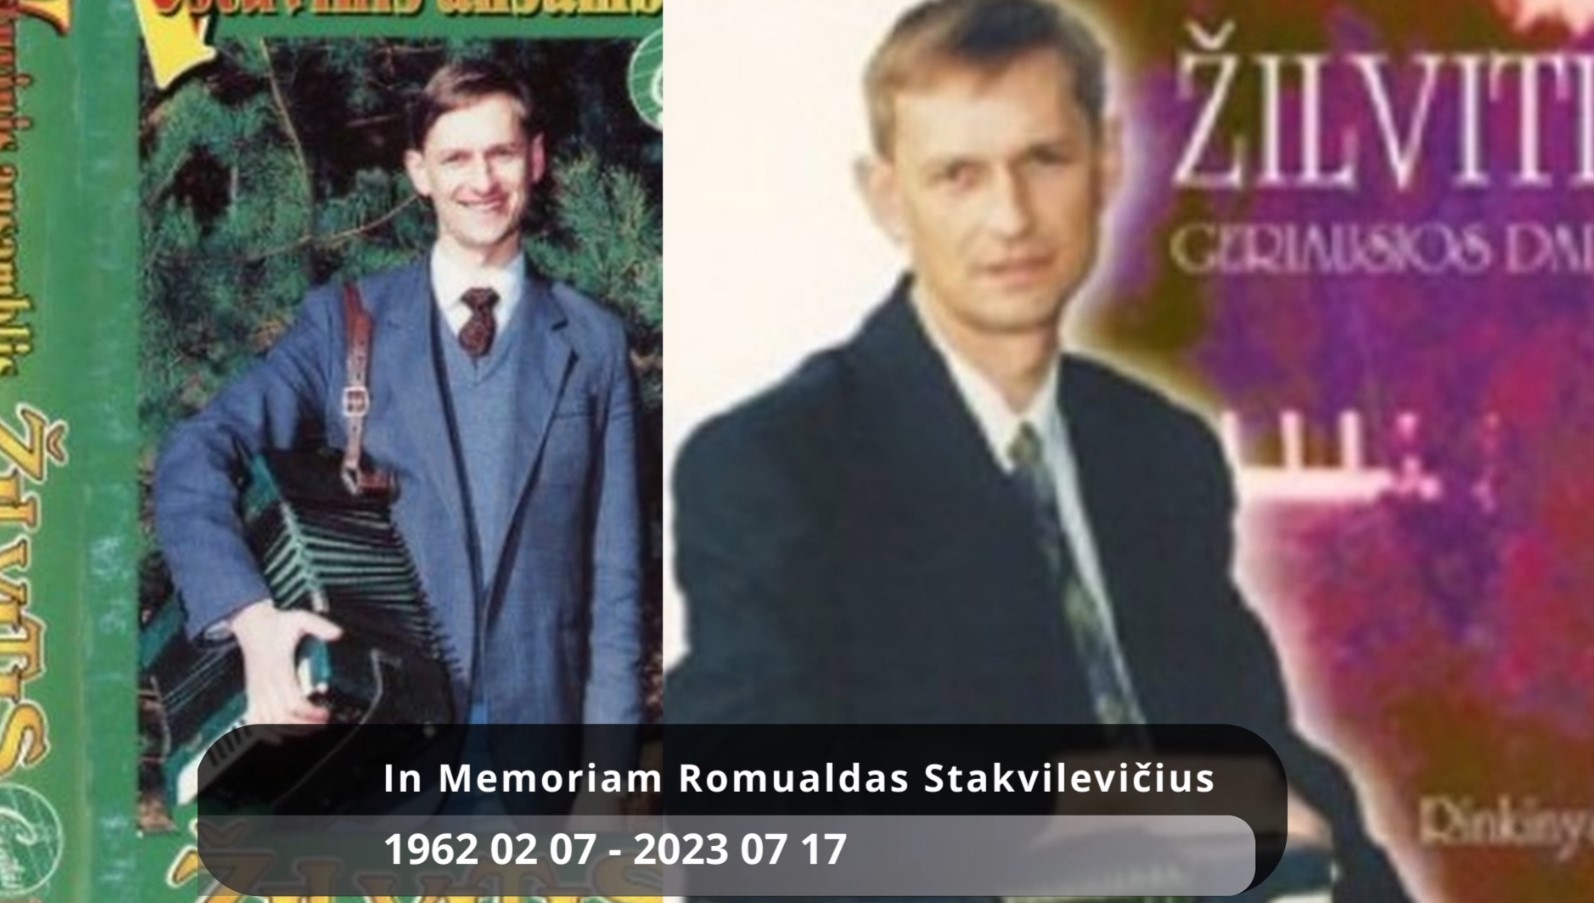  In Memoriam Romualdas Stakvilevičius